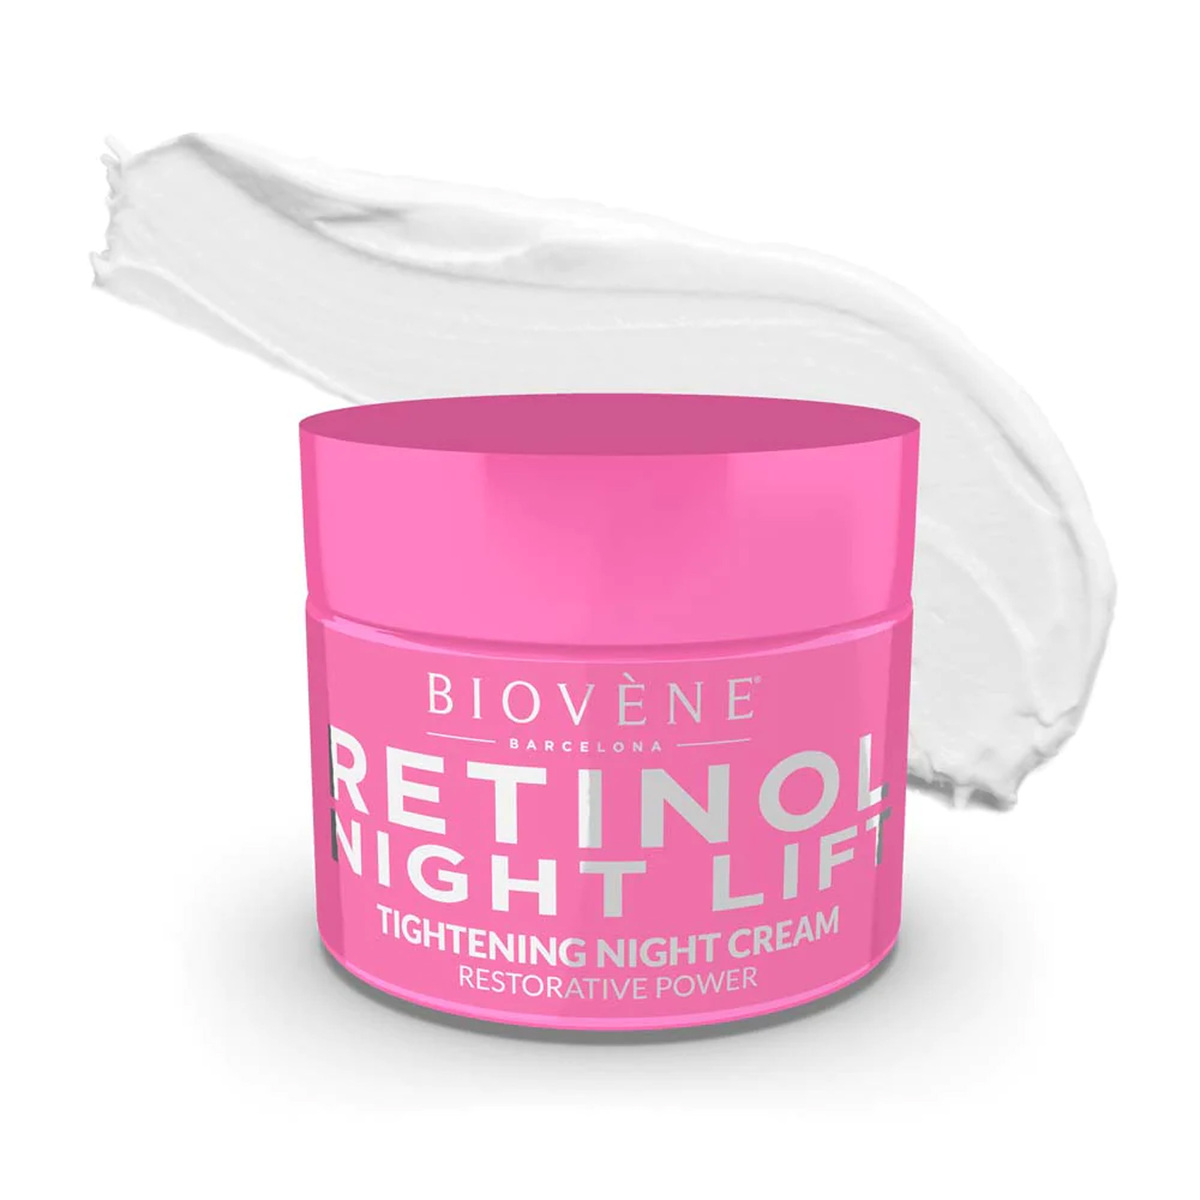 Biovene Retinol Night Lift Power Tightening Night Cream 50 ml